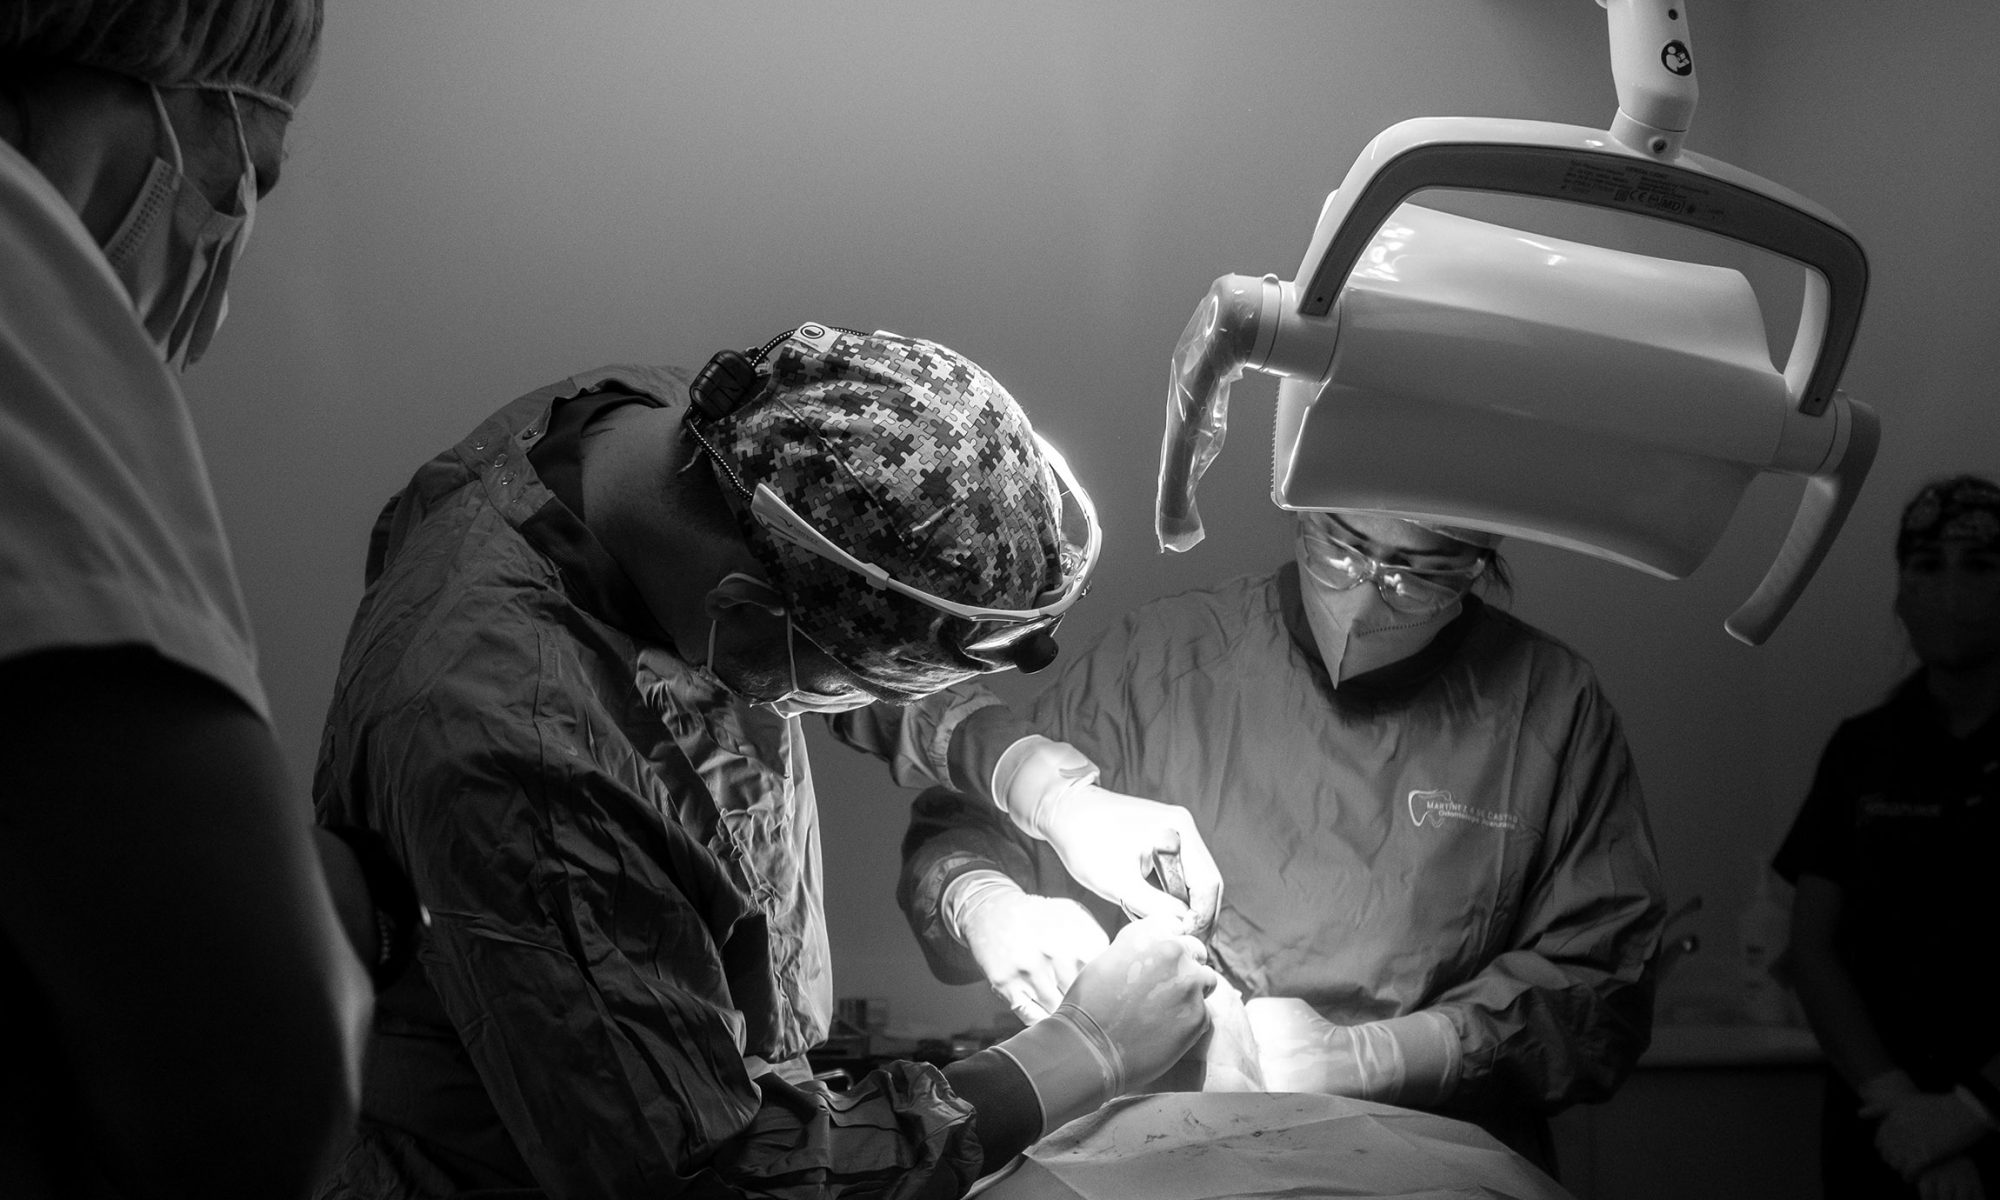 intervención quirúrgica de reconstrucción del maxilar pionera en Galicia